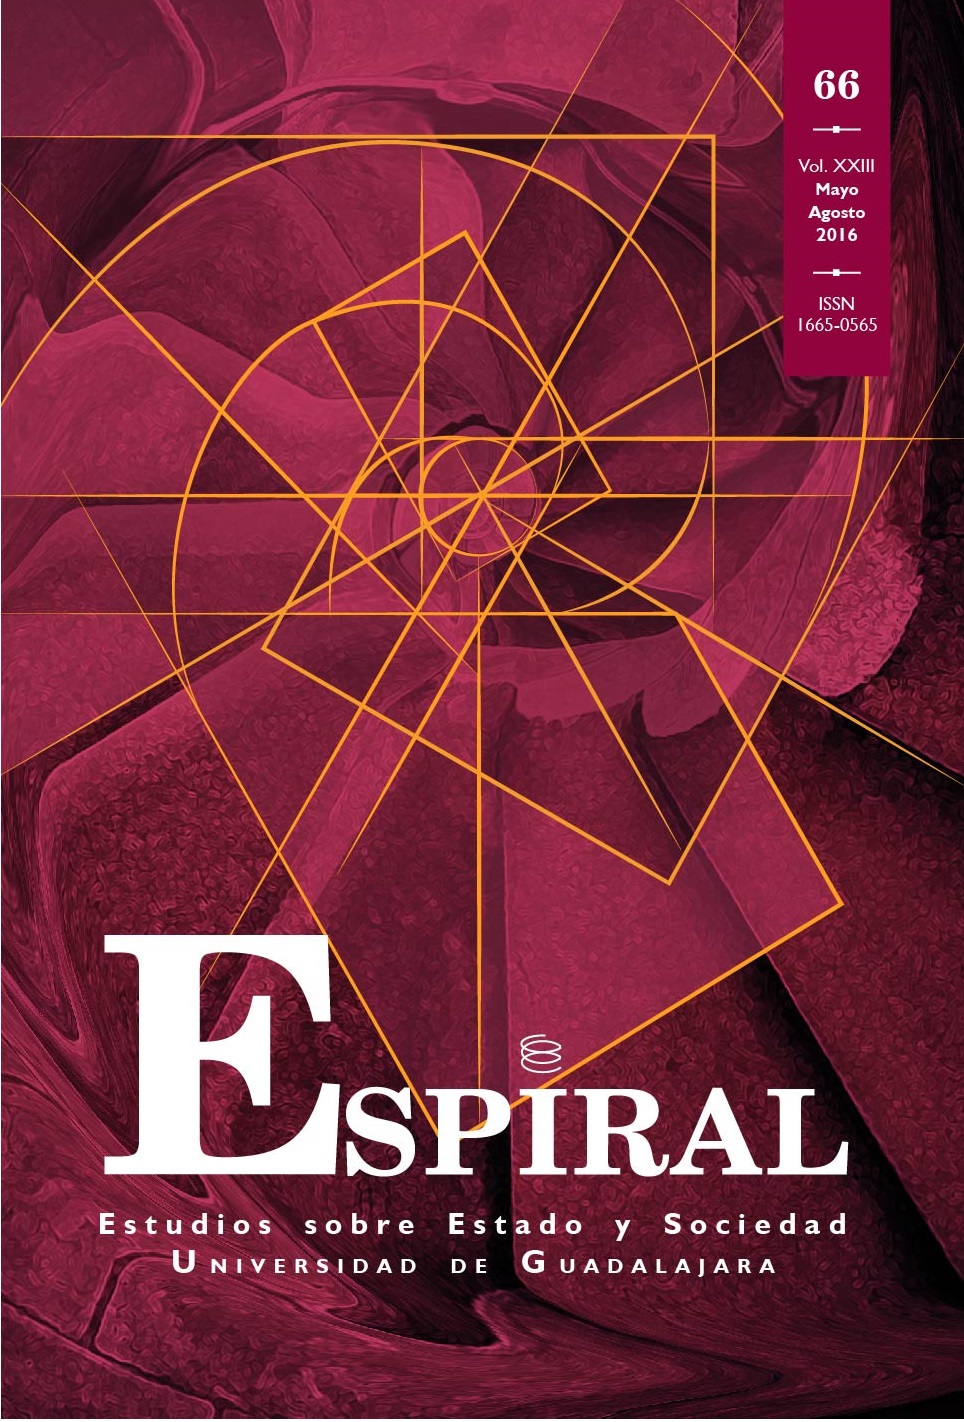 Portada de la revista Espiral, Estudios sobre el Estado y Sociedad. Universidad de Guadalajara, Vol.23 Núm. 66 (Espiral, Estudios sobre Estado y Sociedad, 2017)